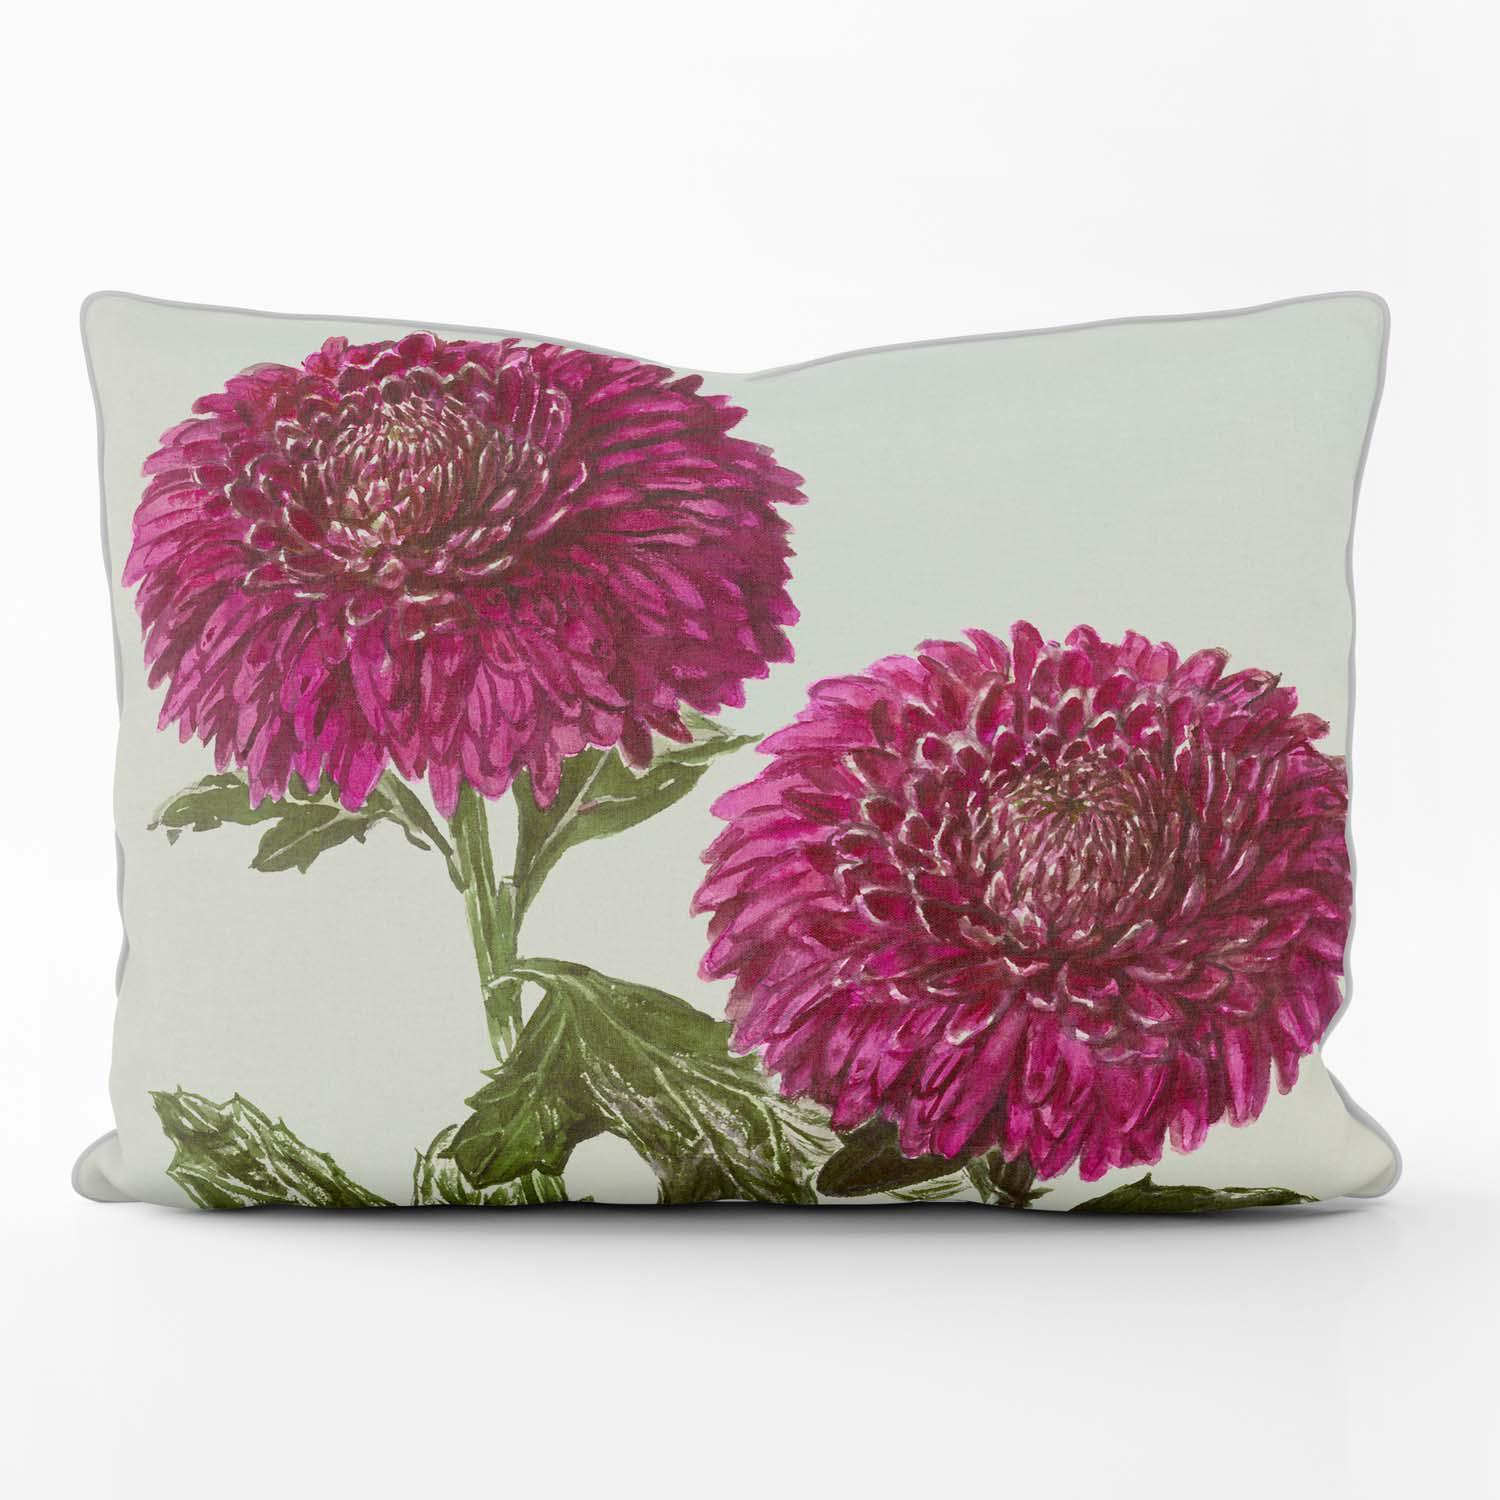 Chrysanthemum Velveteen - Alfred Wise Outdoor Cushion - Handmade Cushions UK - WeLoveCushions